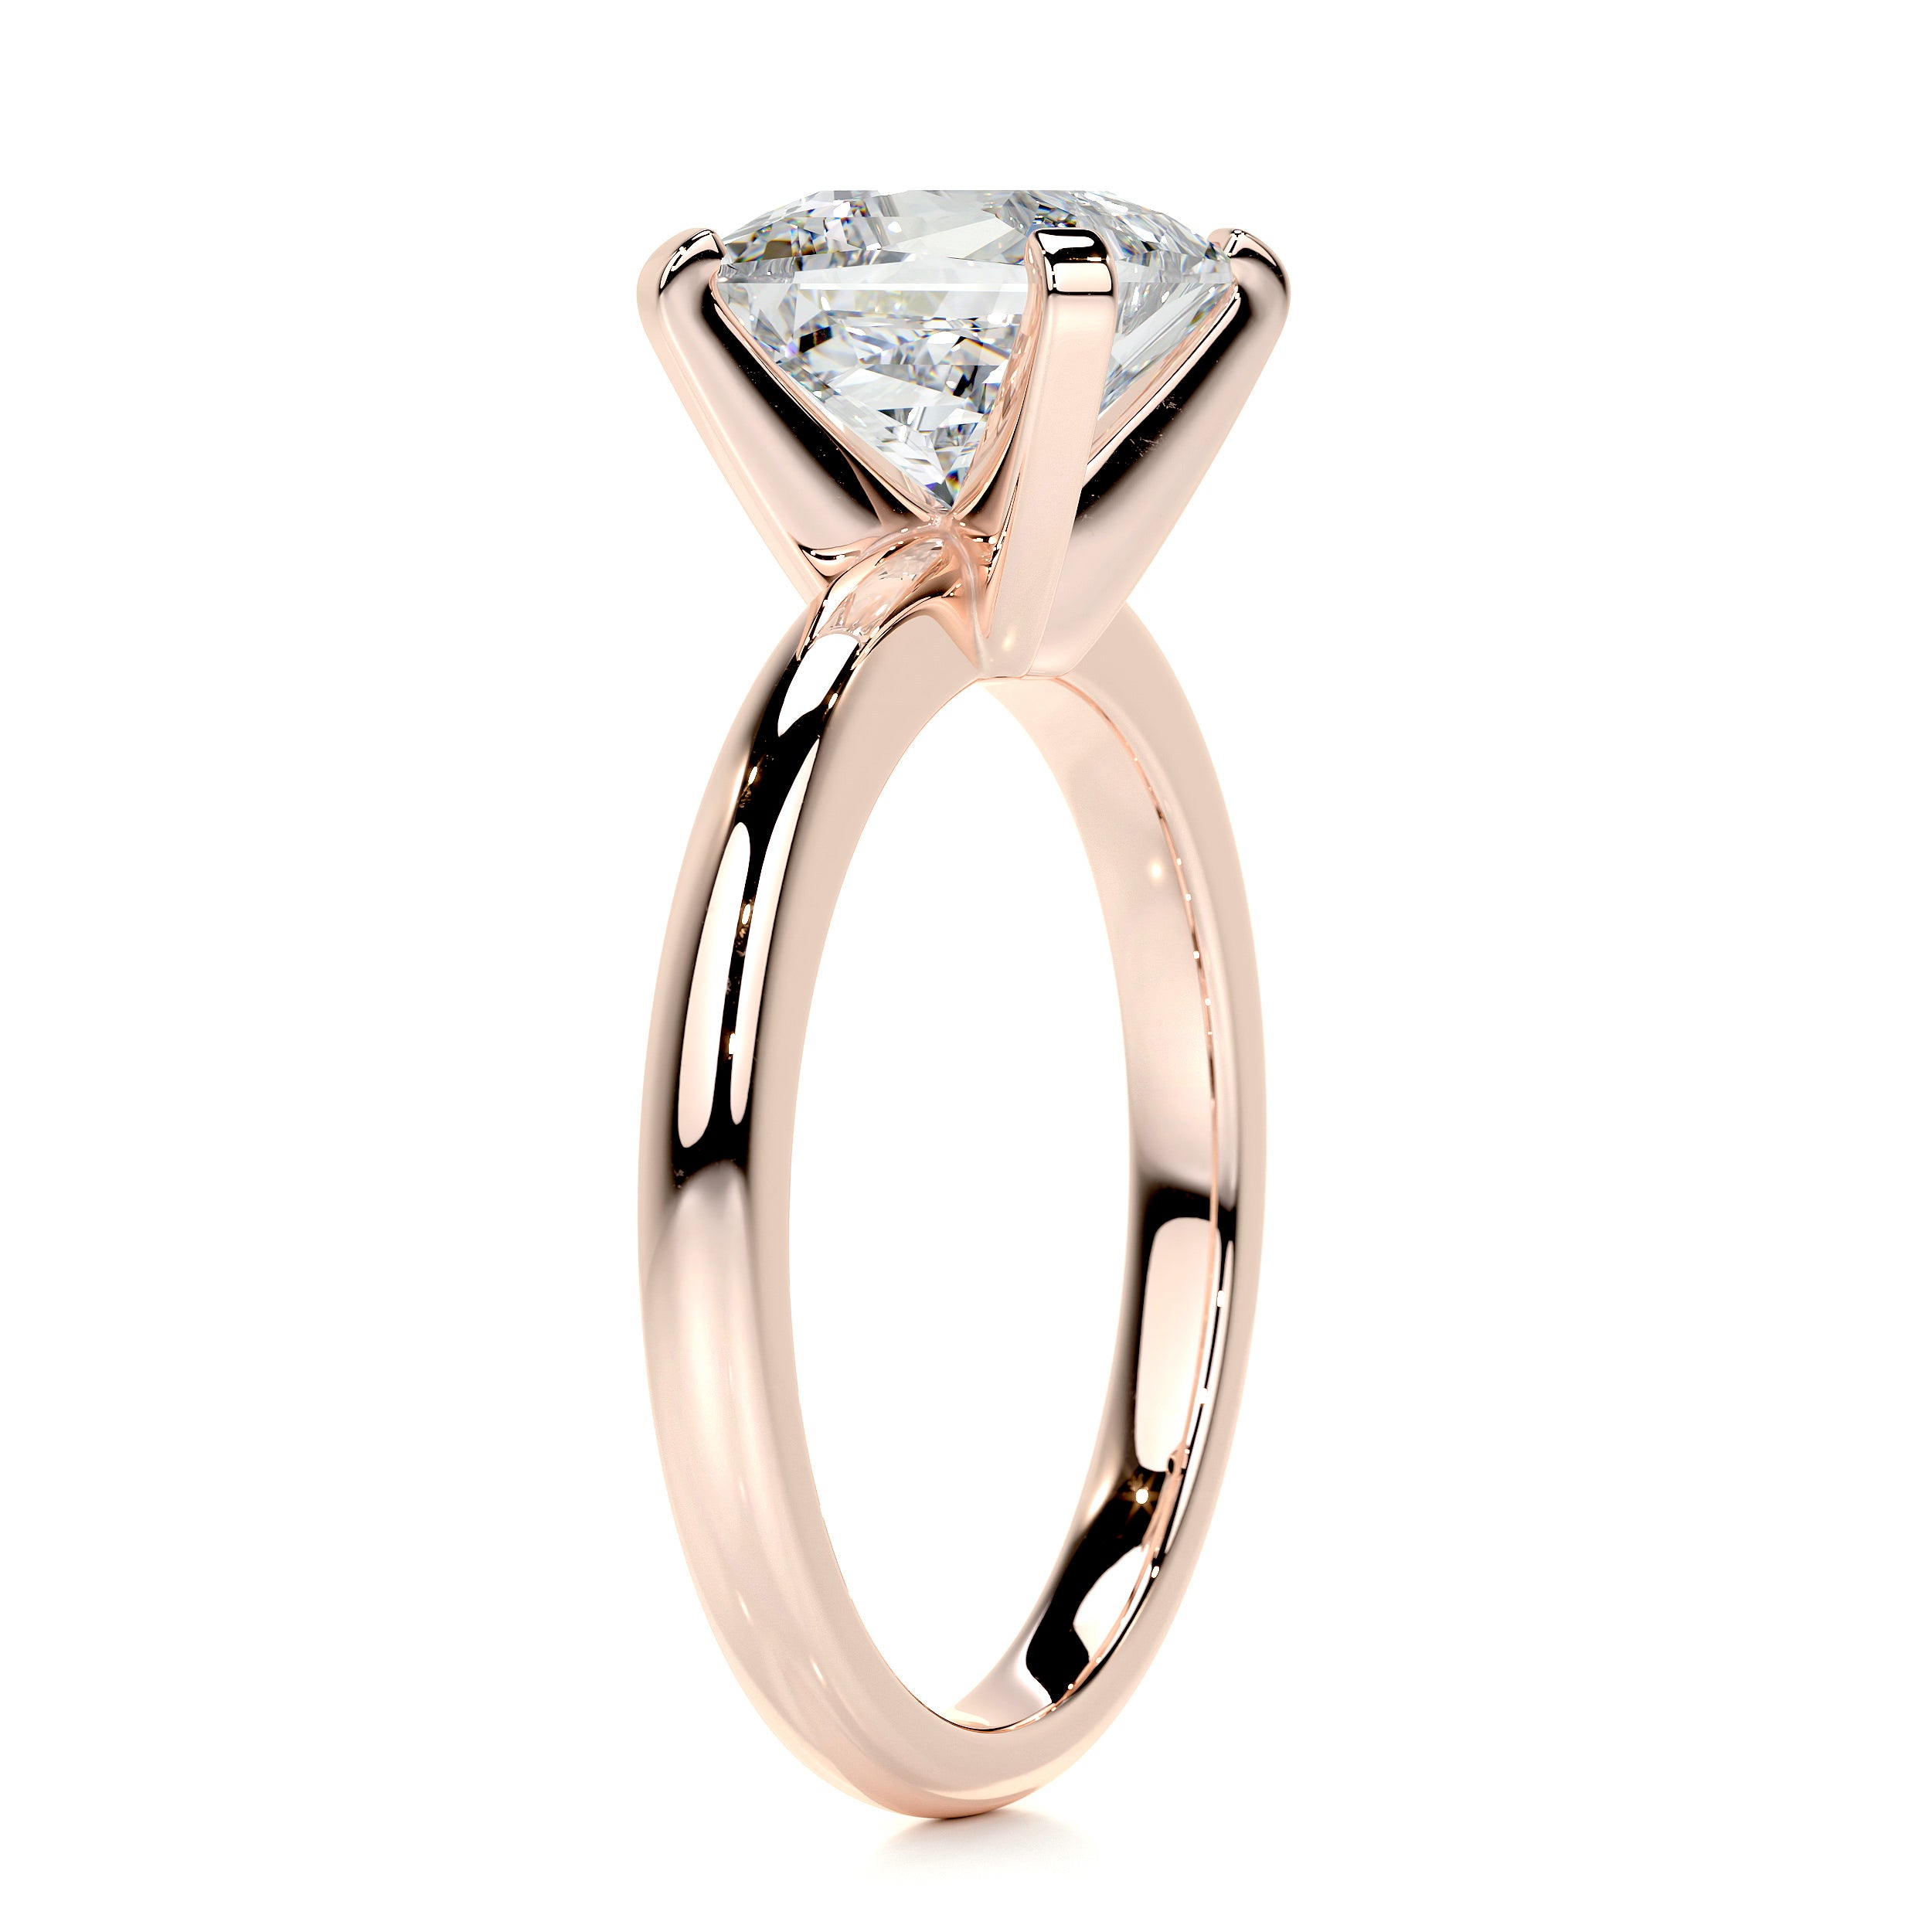 Isabelle Diamond Engagement Ring   (2 Carat) -14K Rose Gold